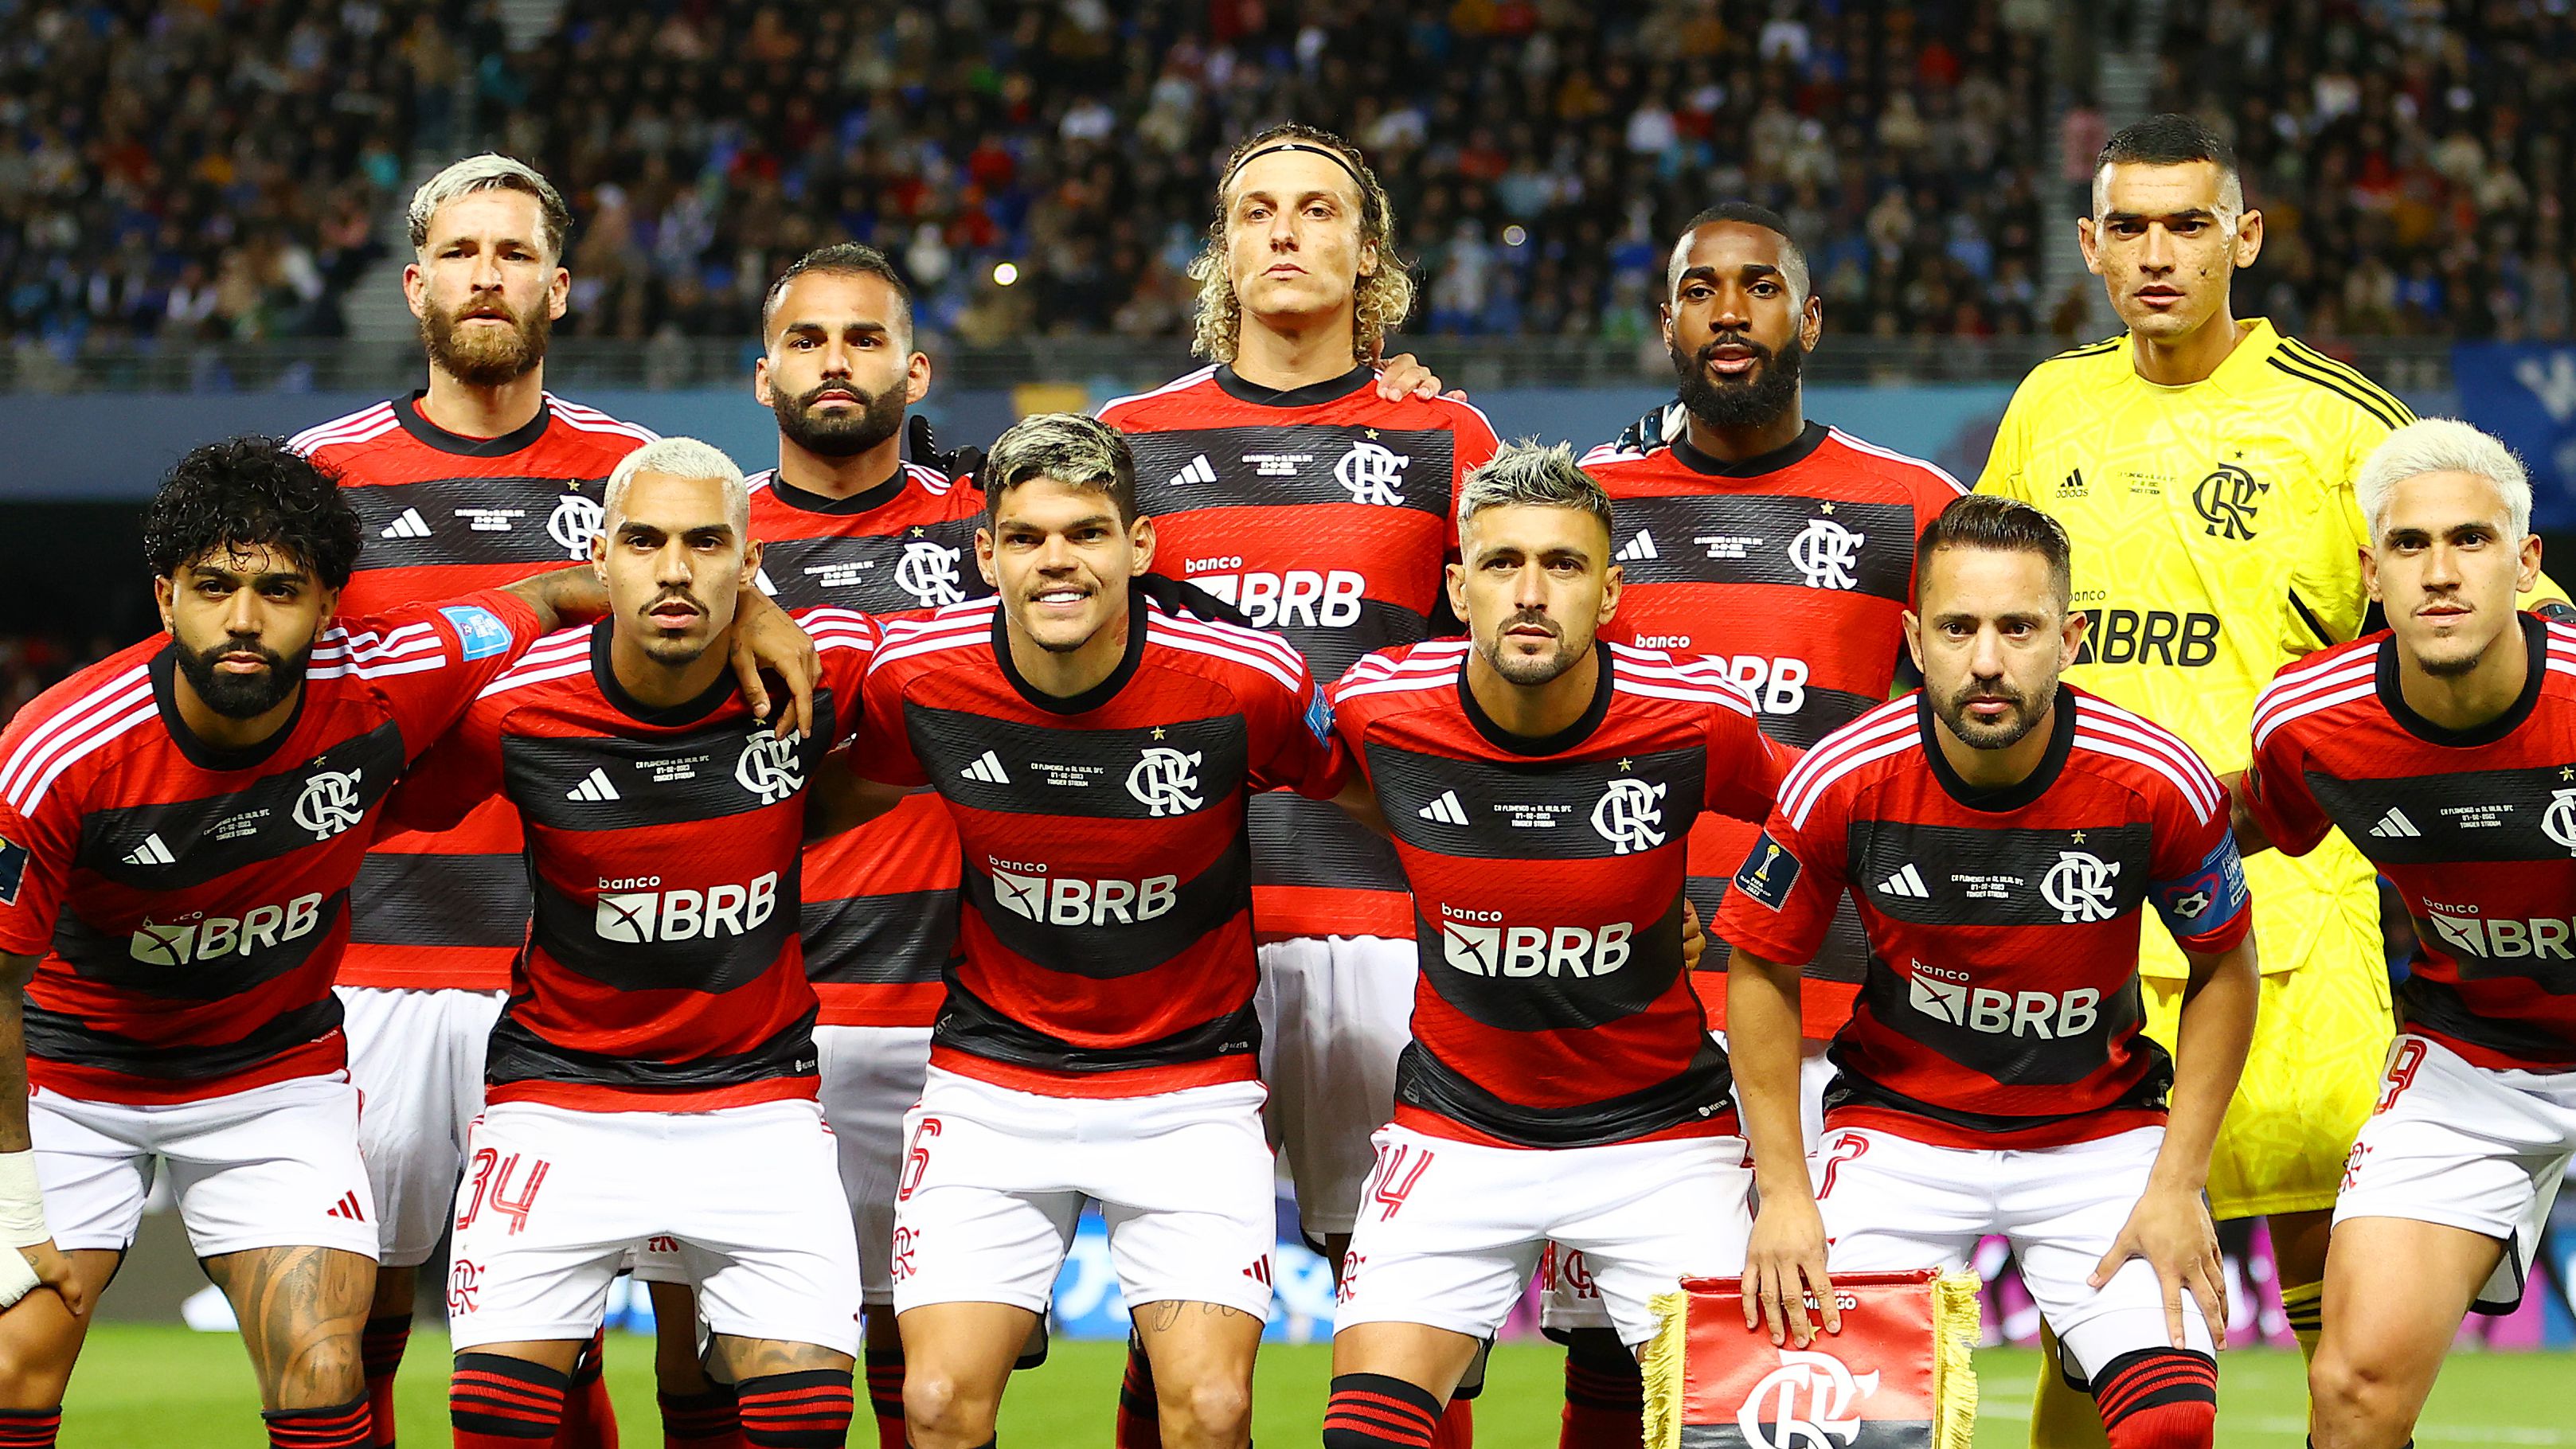 Equipe do Flamengo escalada para enfrentar o Al-Hilal (Crédito: Getty Images)